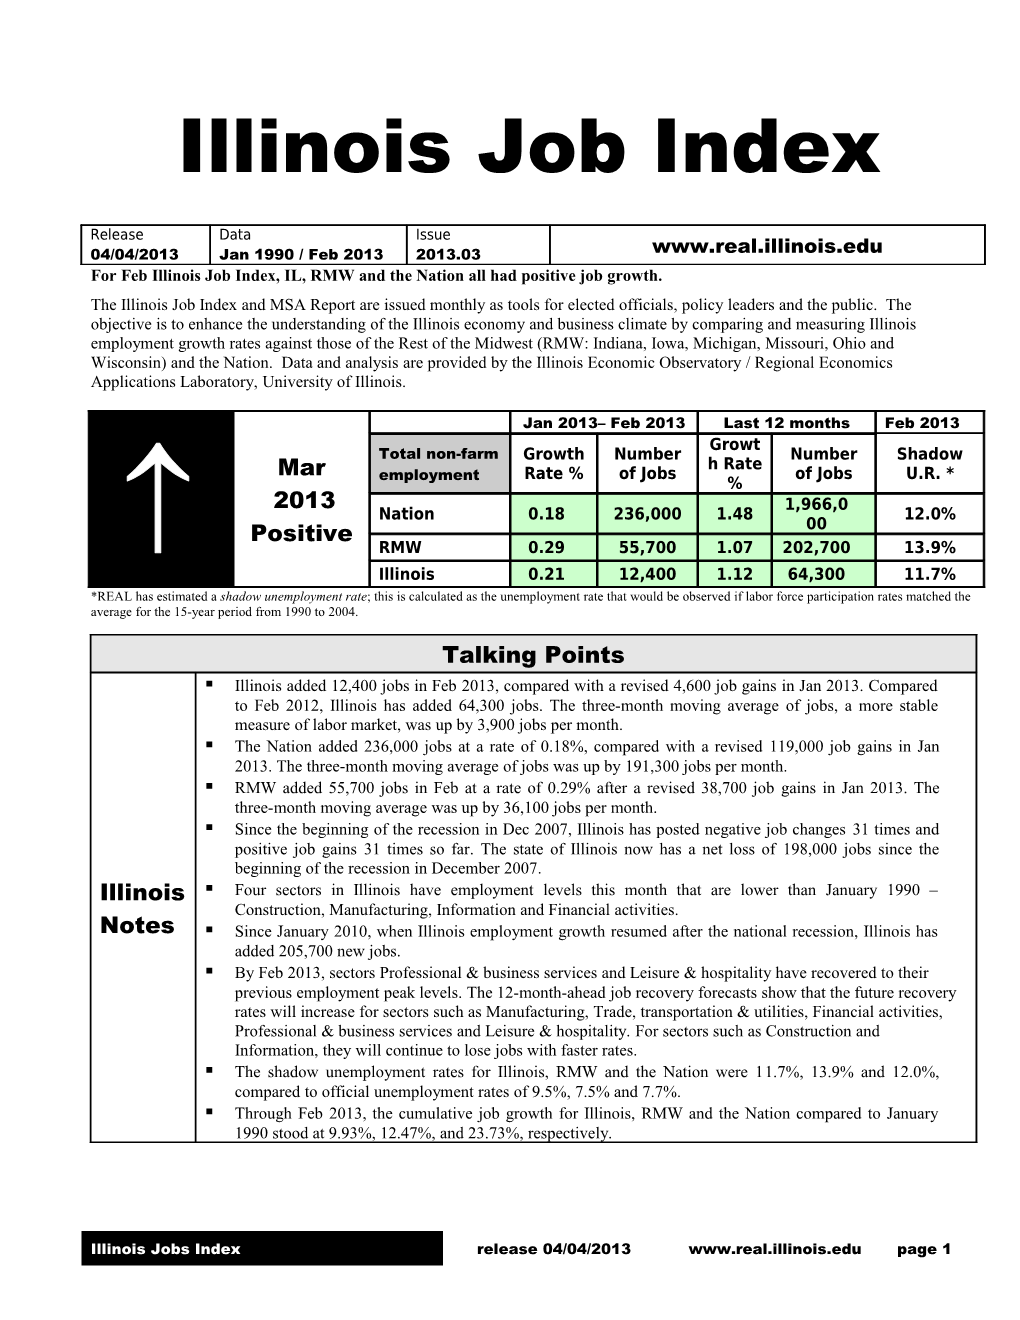 Illinois Job Index s1